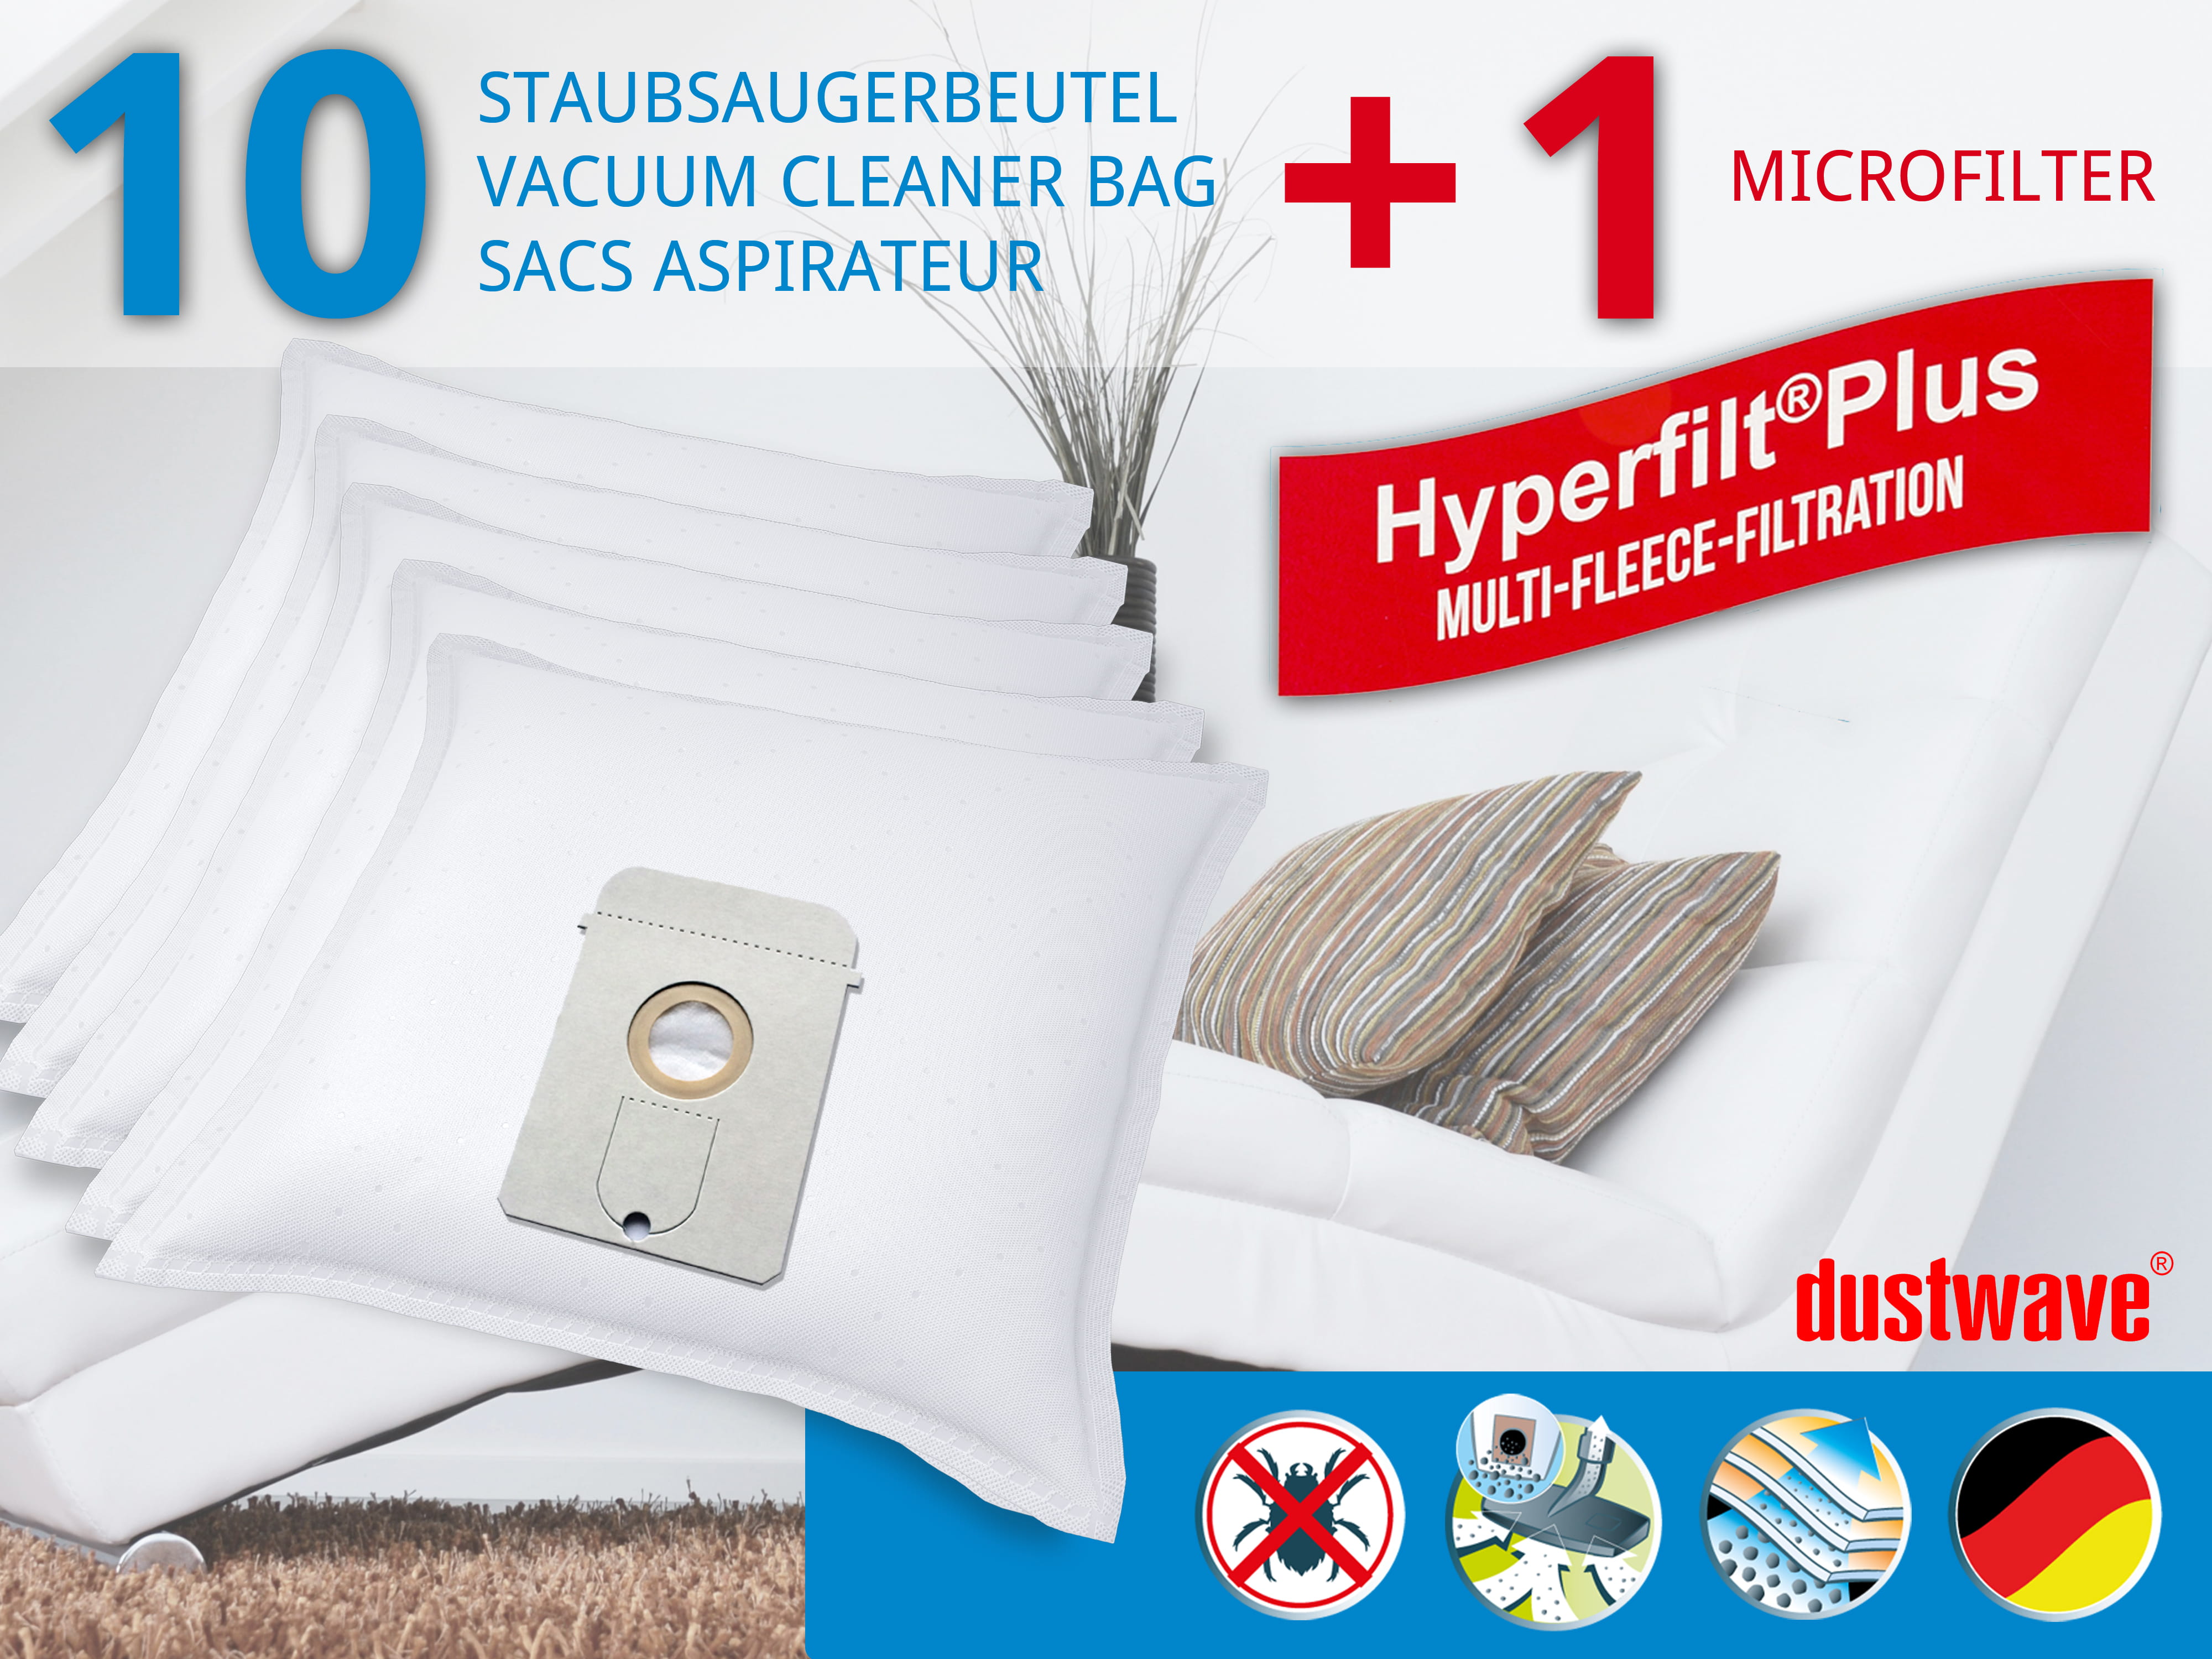 Dustwave® 10 Staubsaugerbeutel für AEG Vampyr TC Comfort - hocheffizient, mehrlagiges Mikrovlies mit Hygieneverschluss - Made in Germany